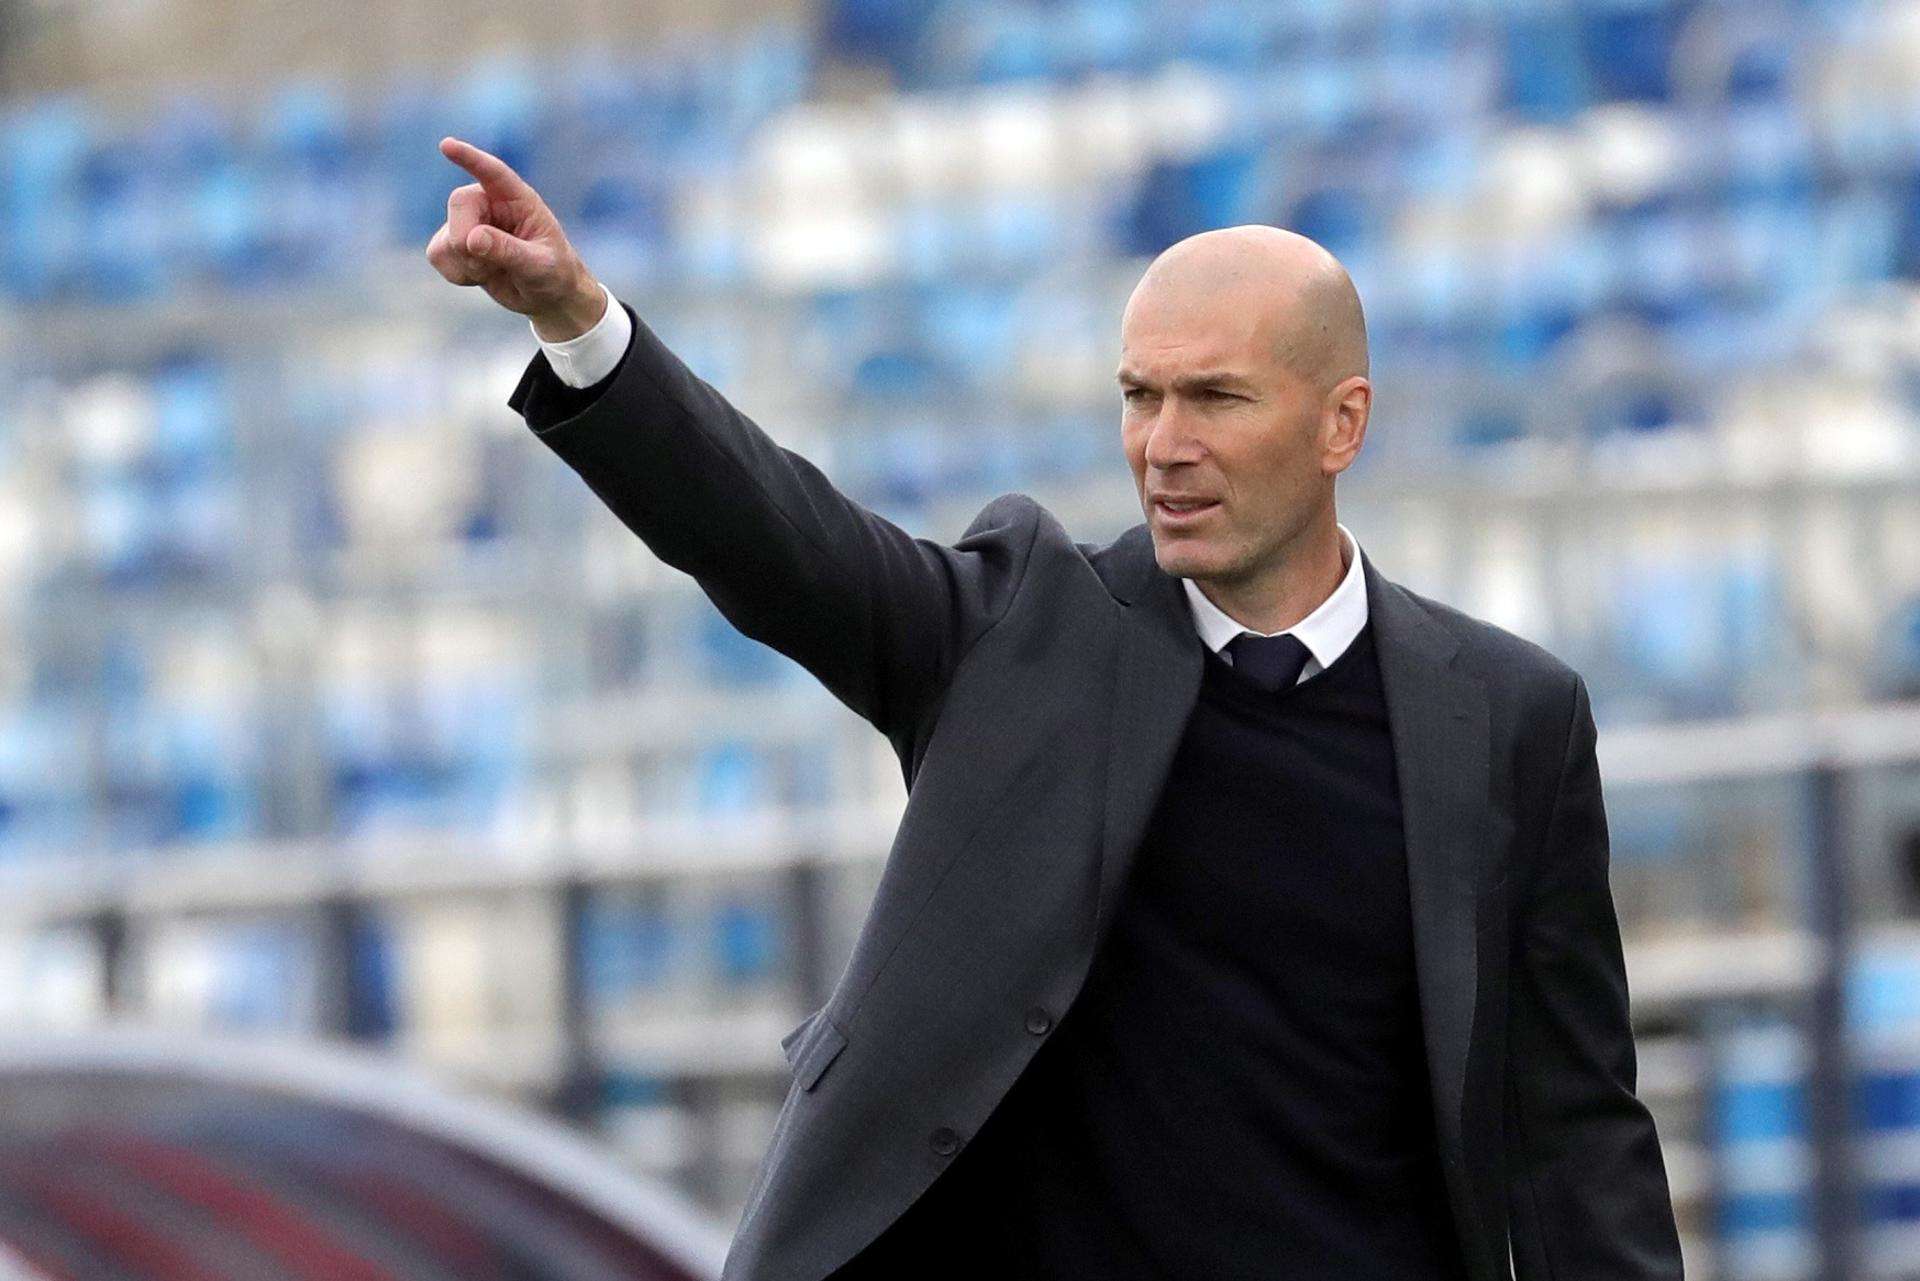 El entrenador francés Zinedine Zidane durante un partido de LaLiga Santander./ EFE